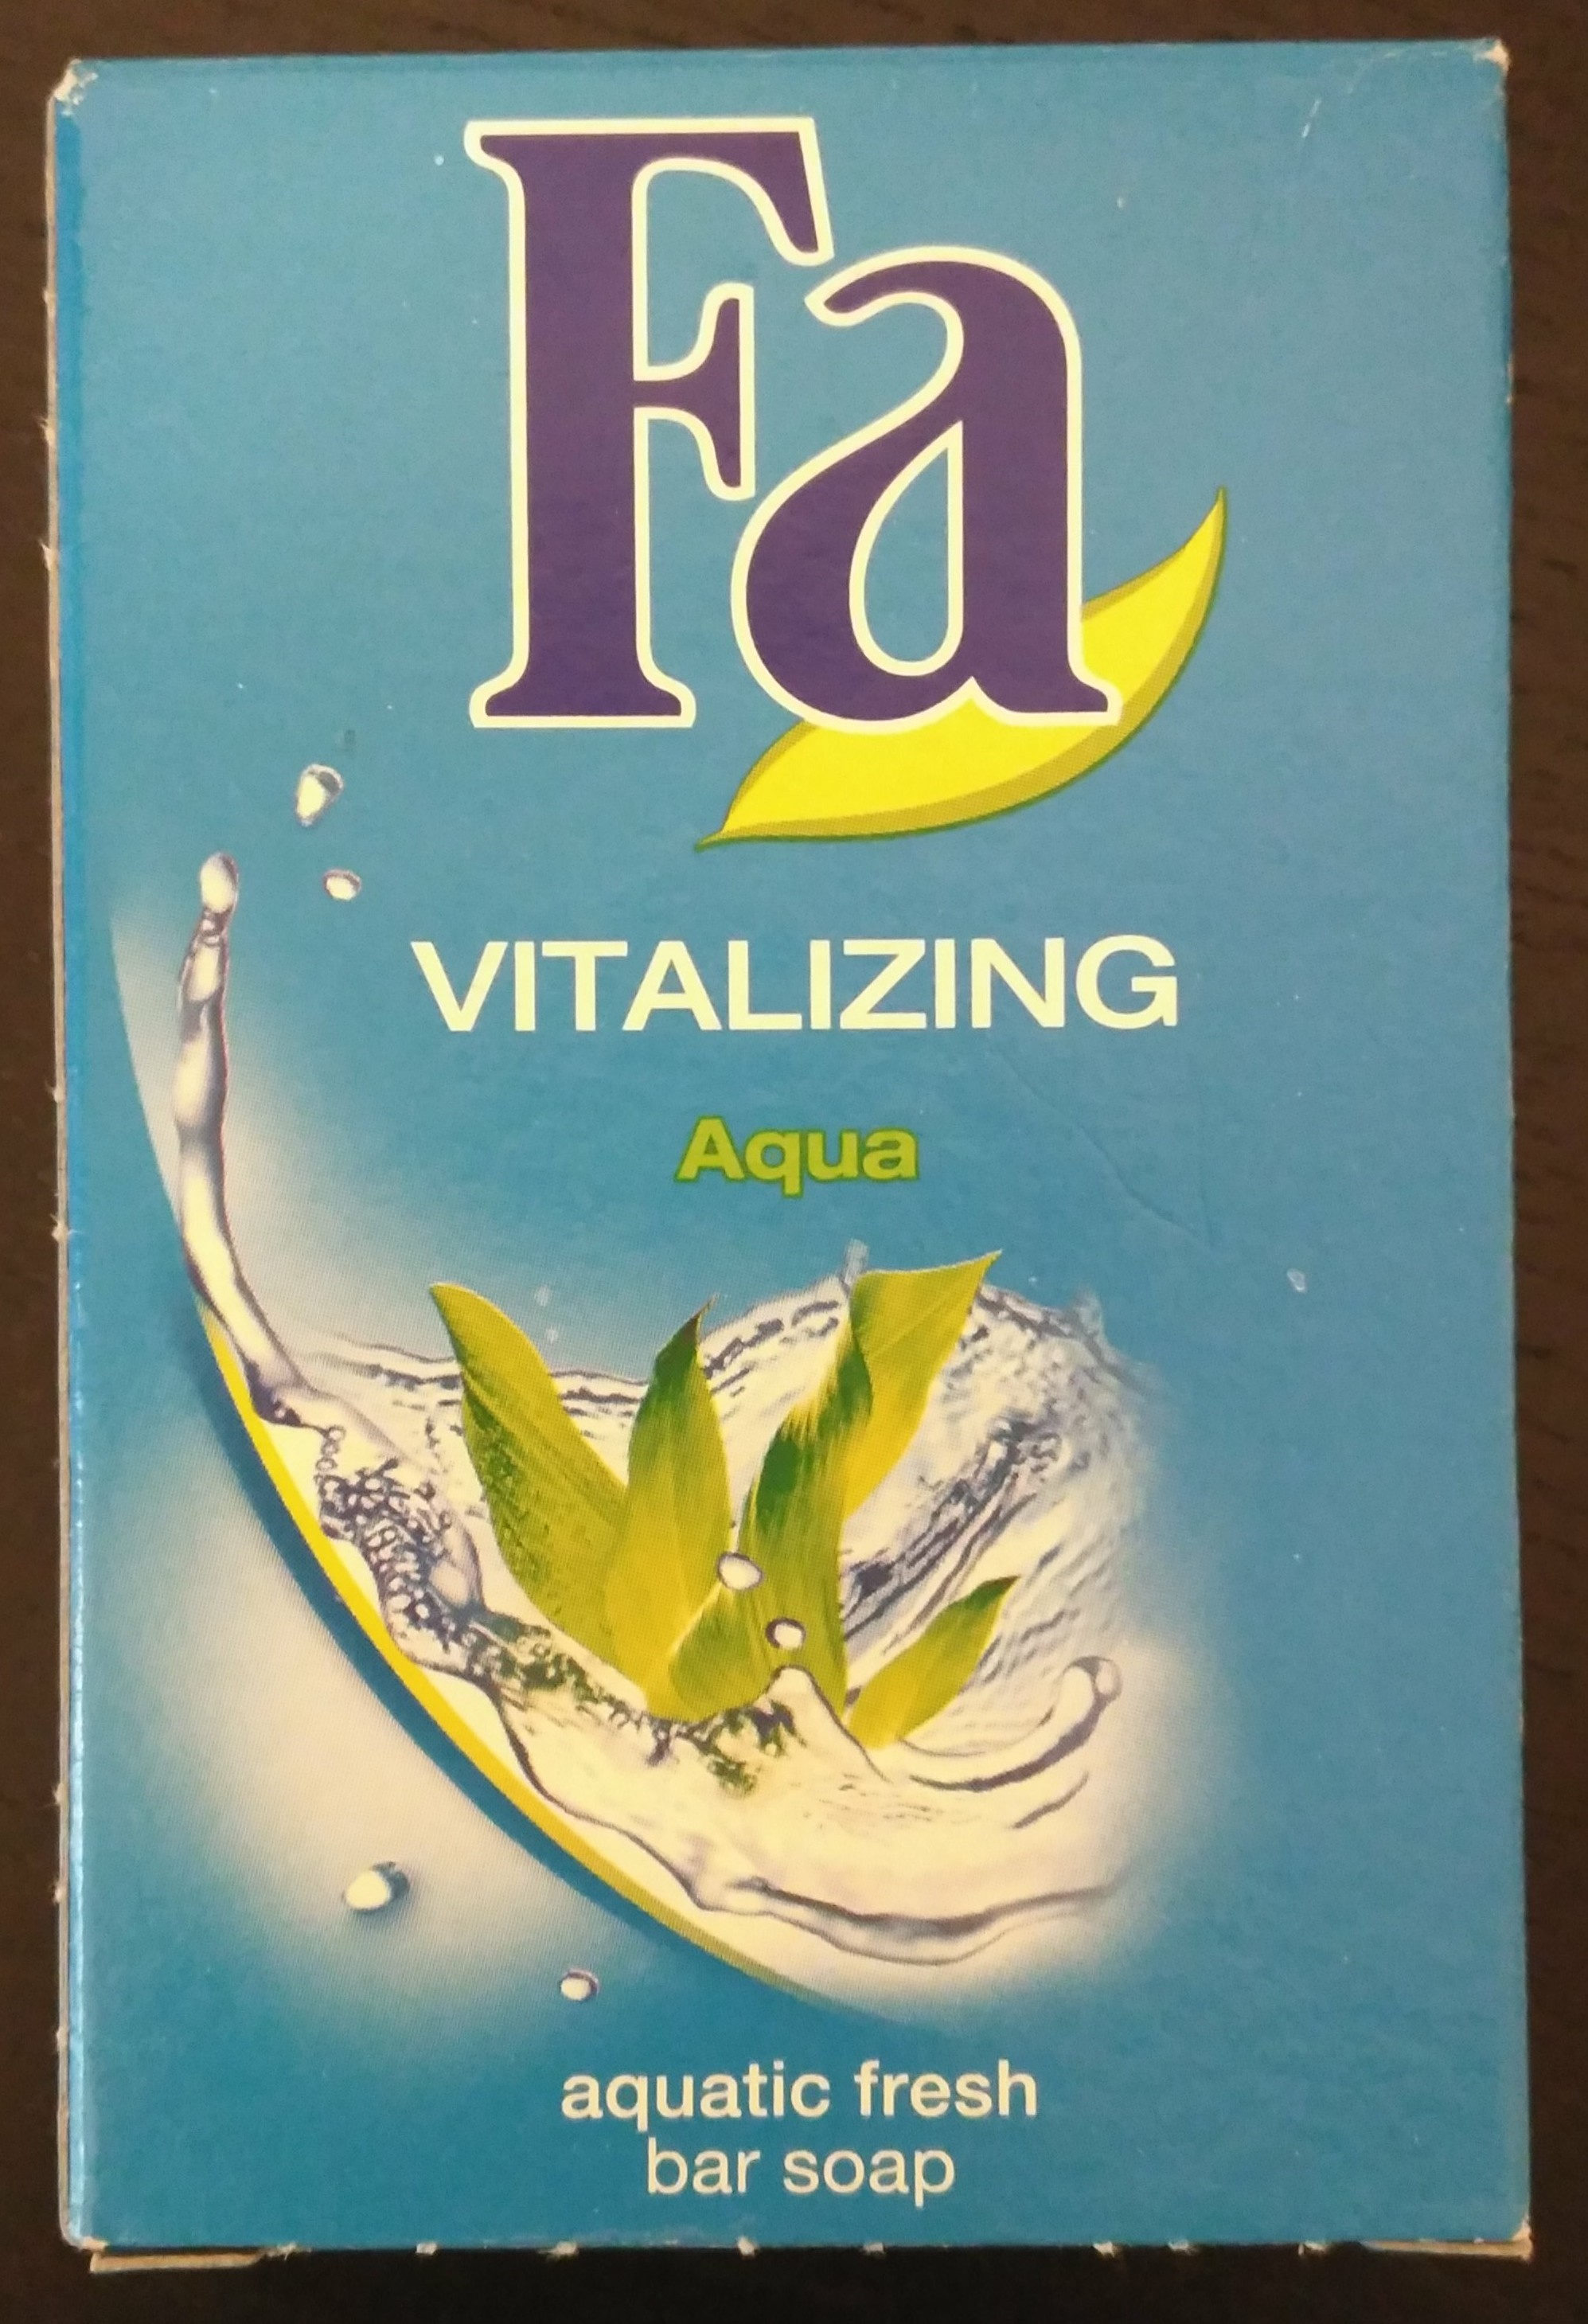 Vitalizing Aqua Festseife mit aquatisch-frischem Duft - Produit - de